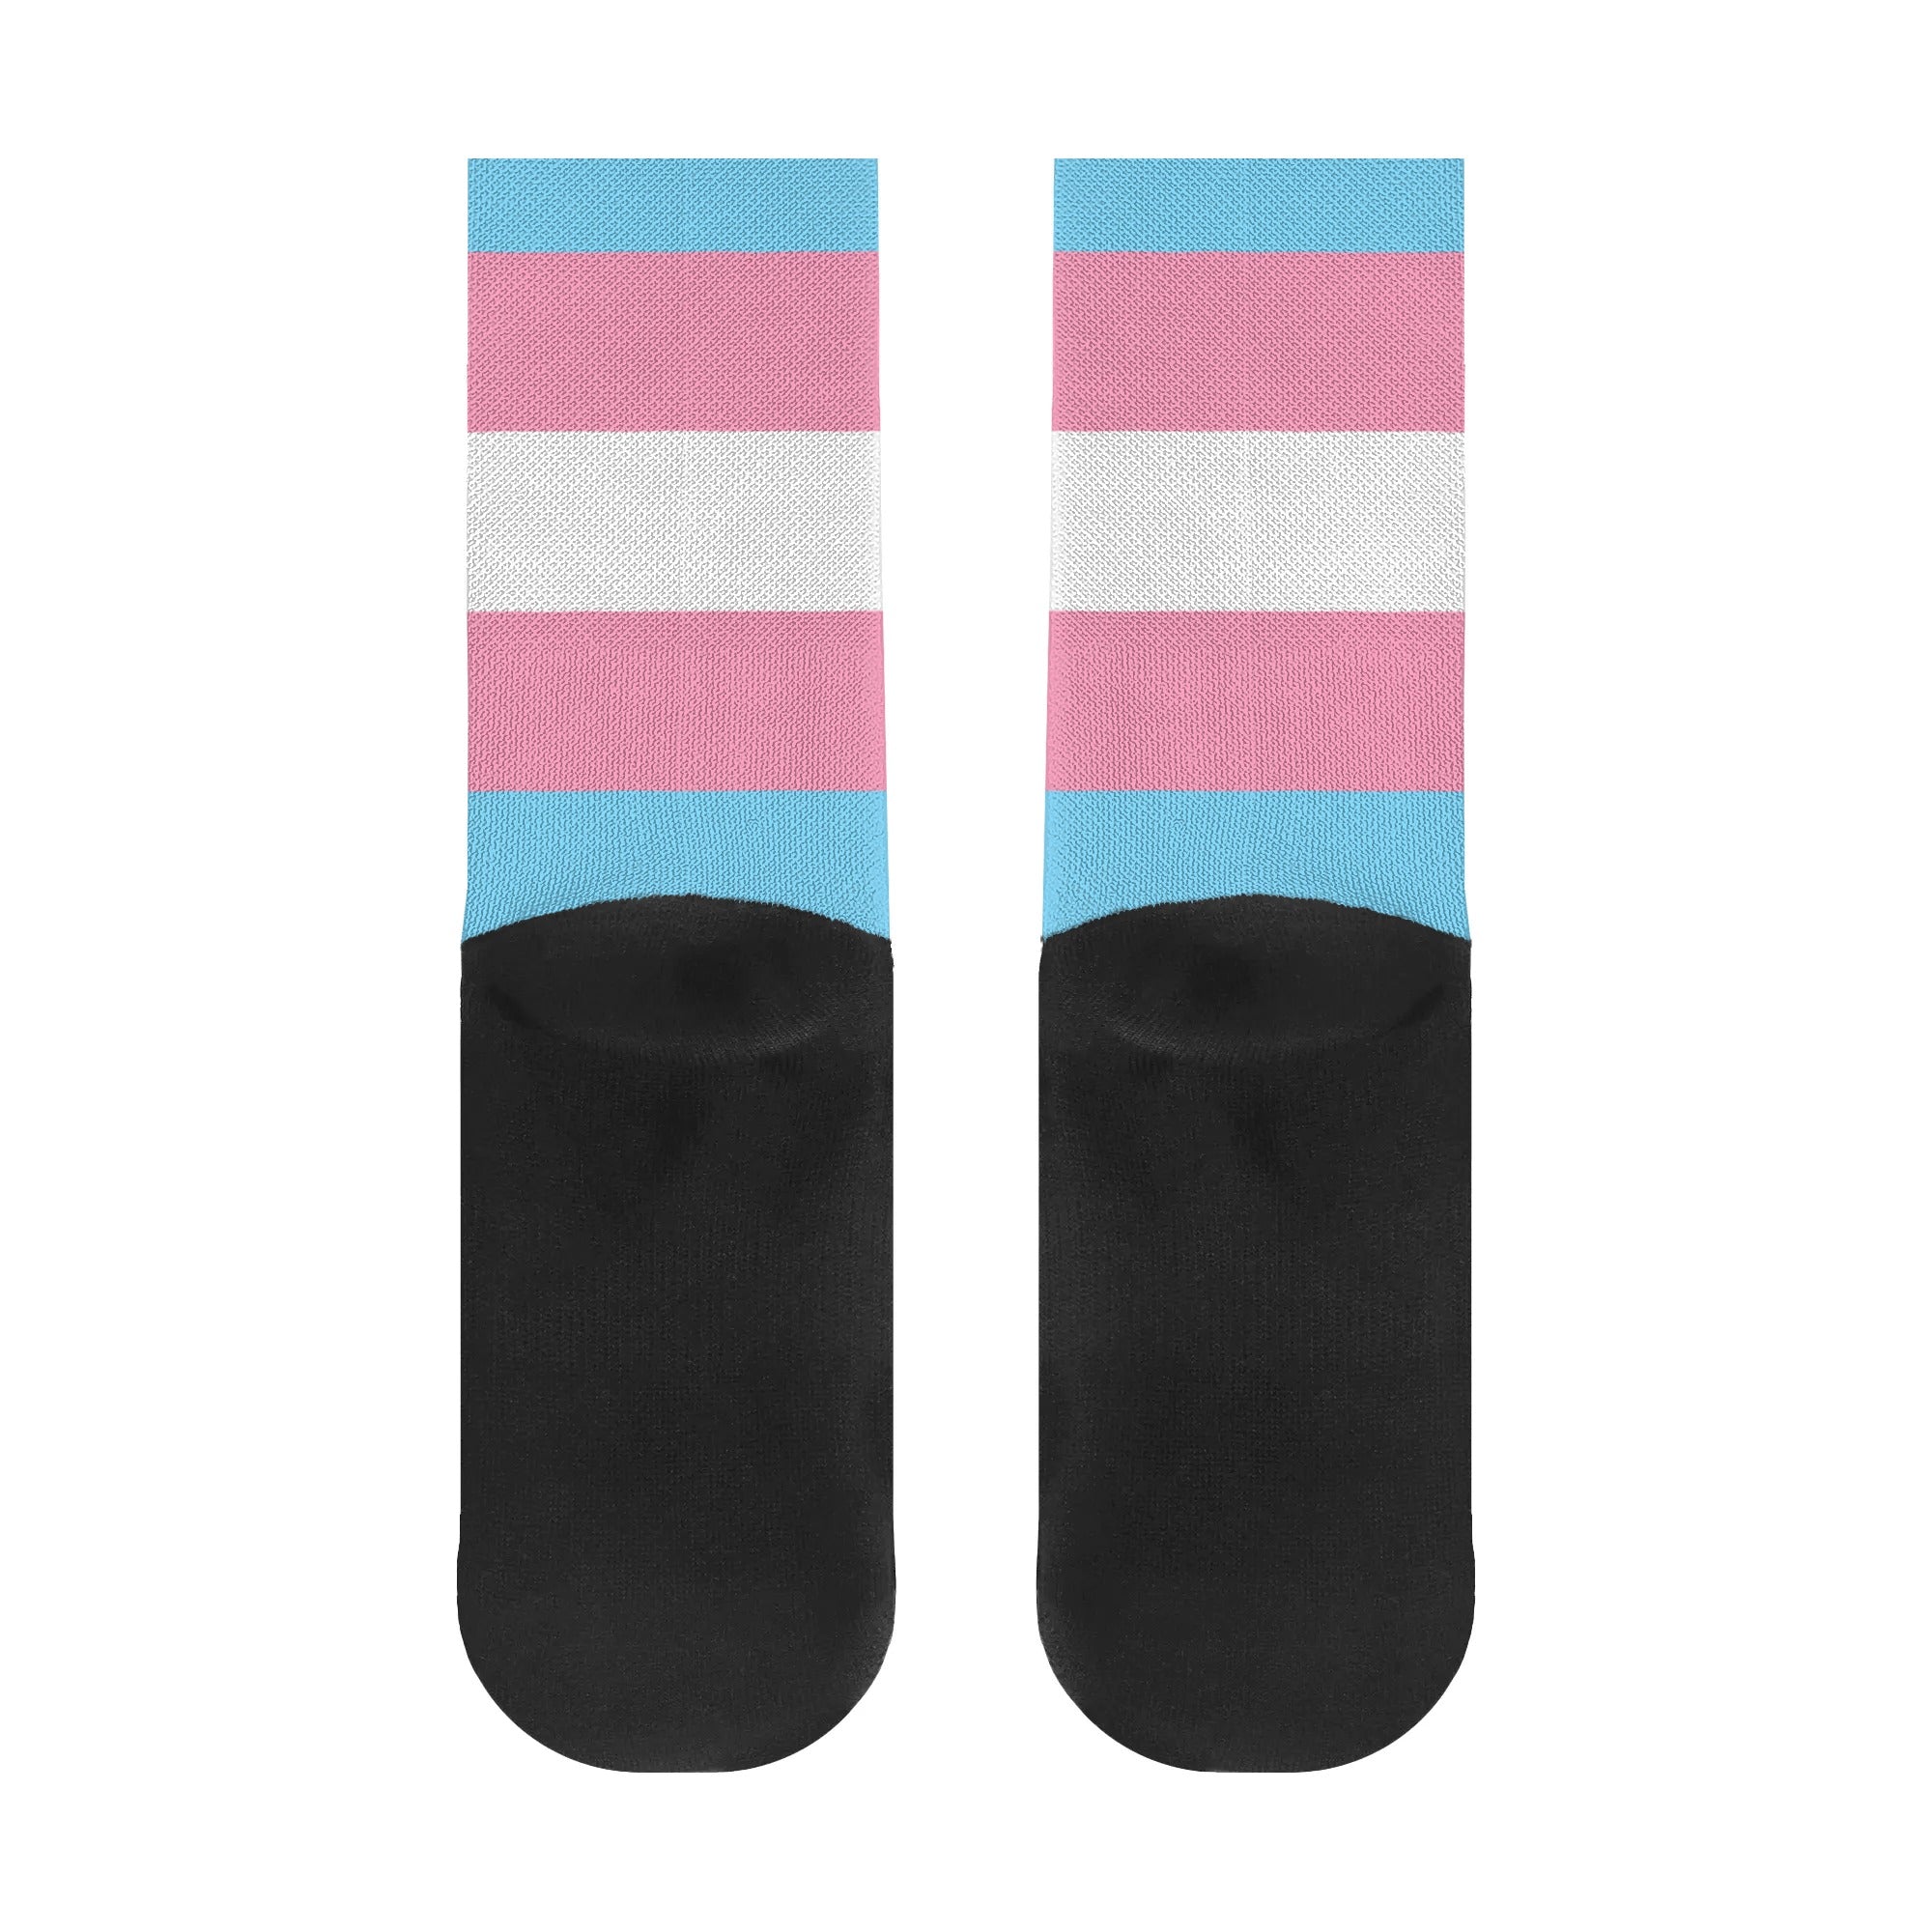 Transgender Pride Flag Crew Socks